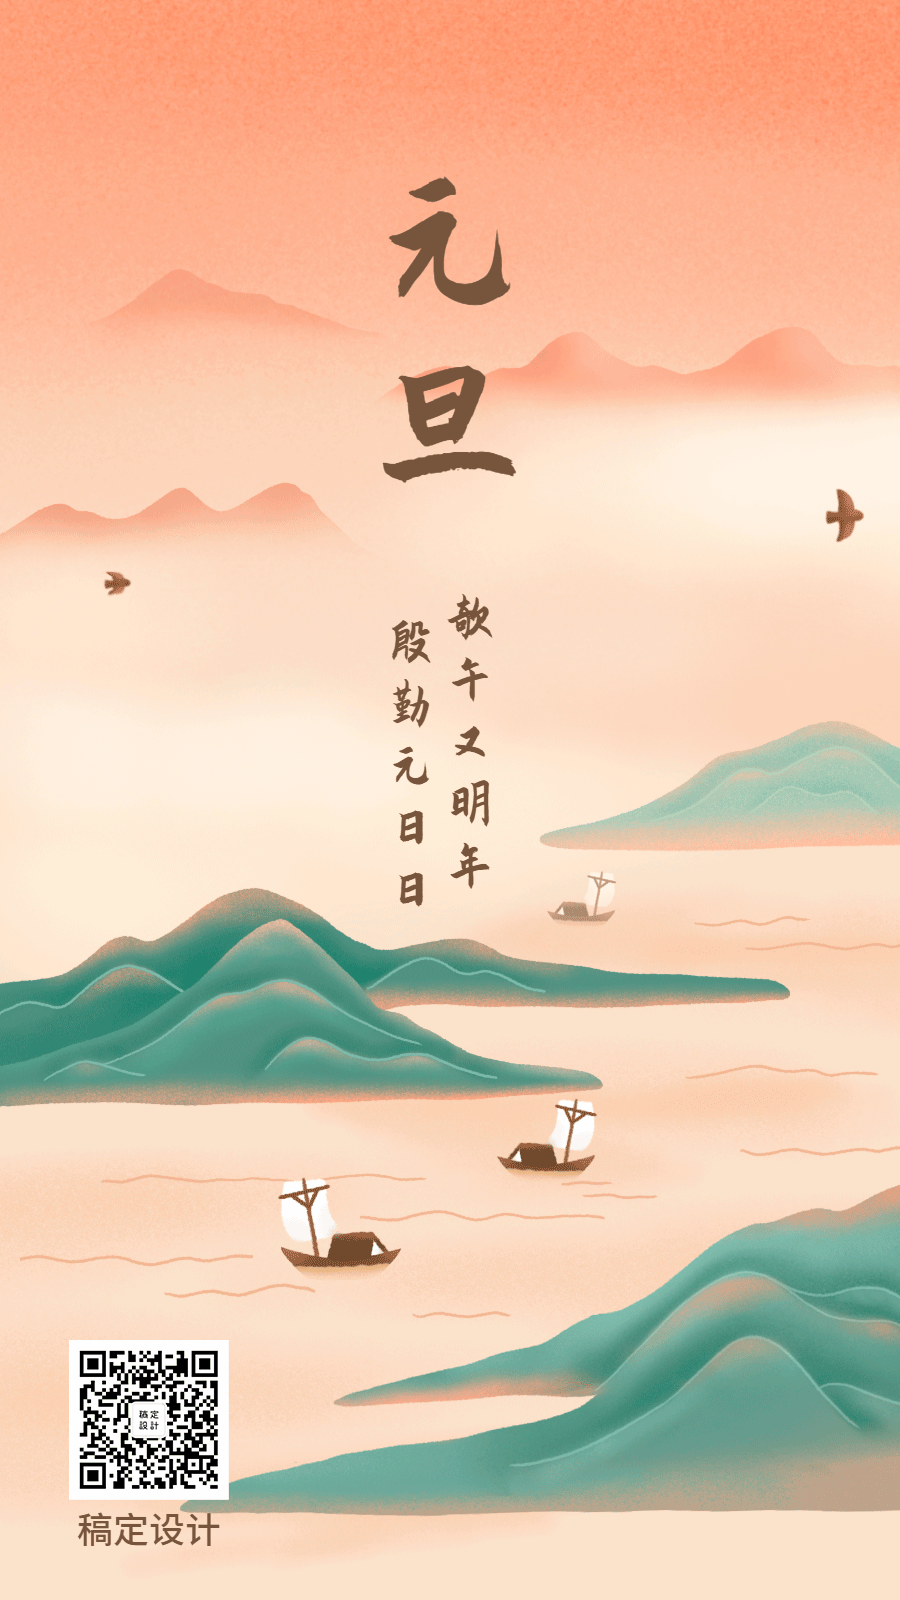 元旦中国风手绘插画创意动态海报预览效果